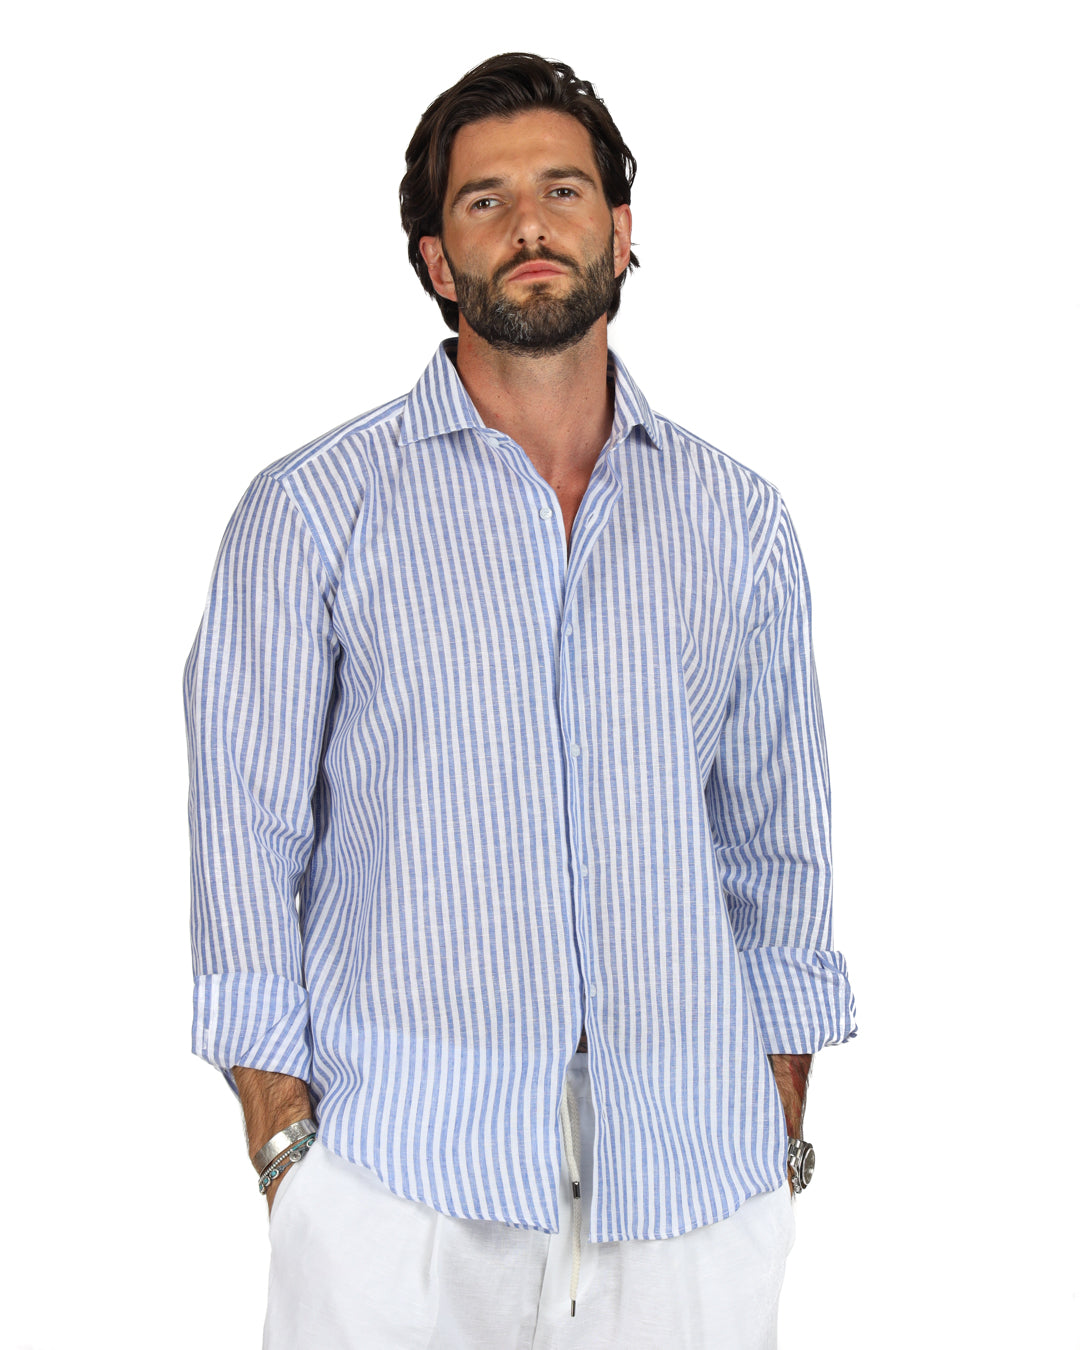 Ischia - Camicia classica righe strette azzurre in lino